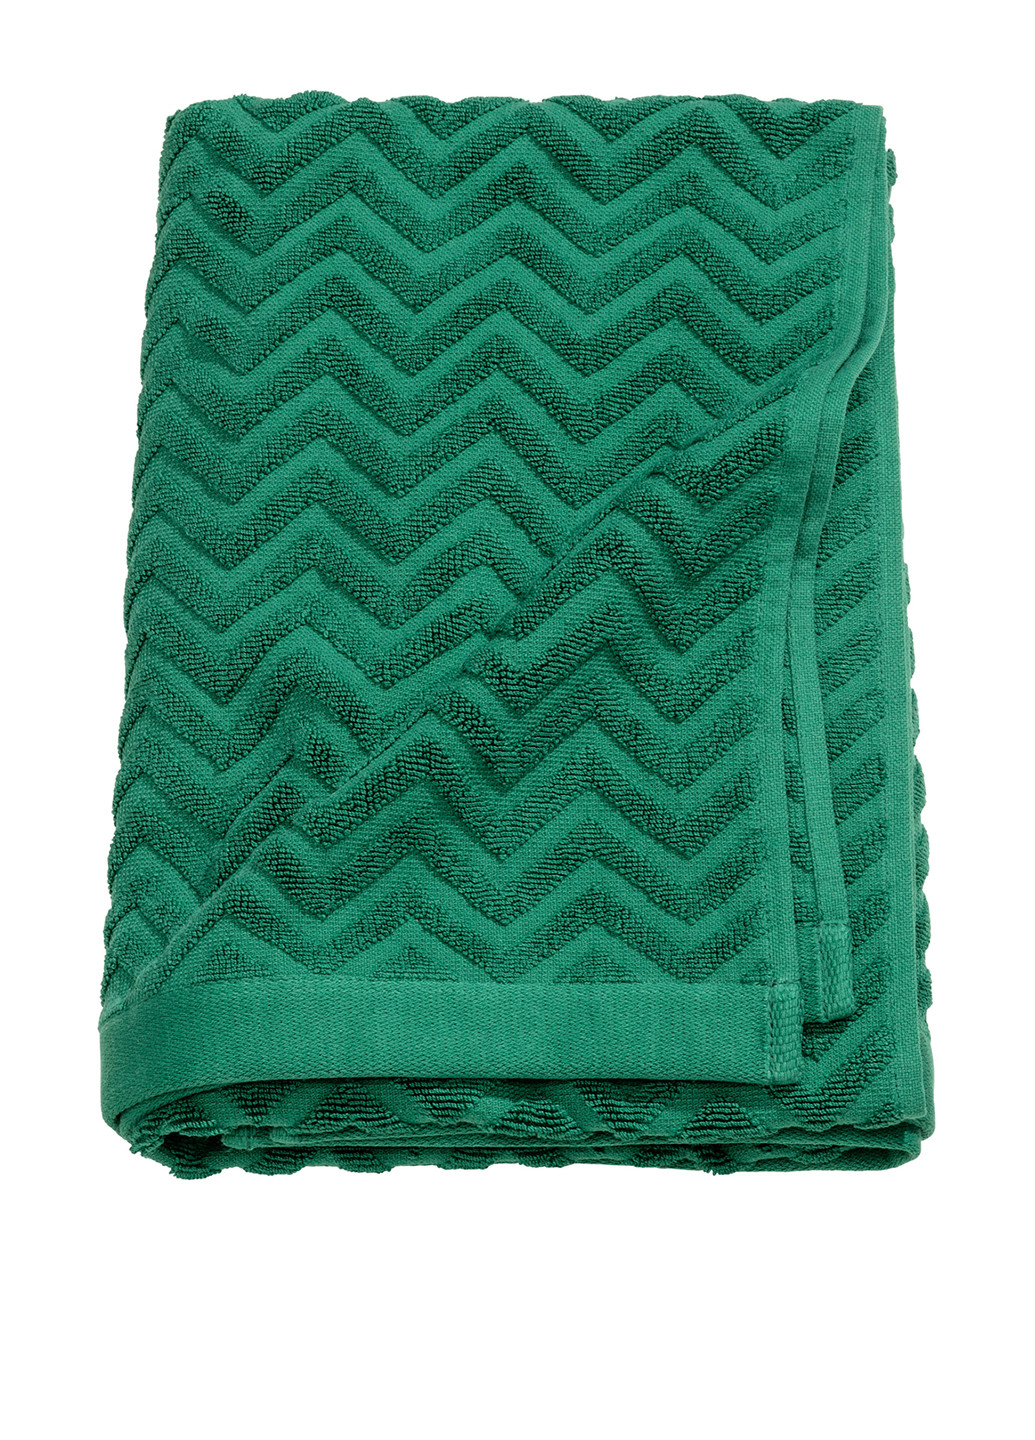 H&M полотенце, 70х140 см геометрический зеленый производство - Бангладеш